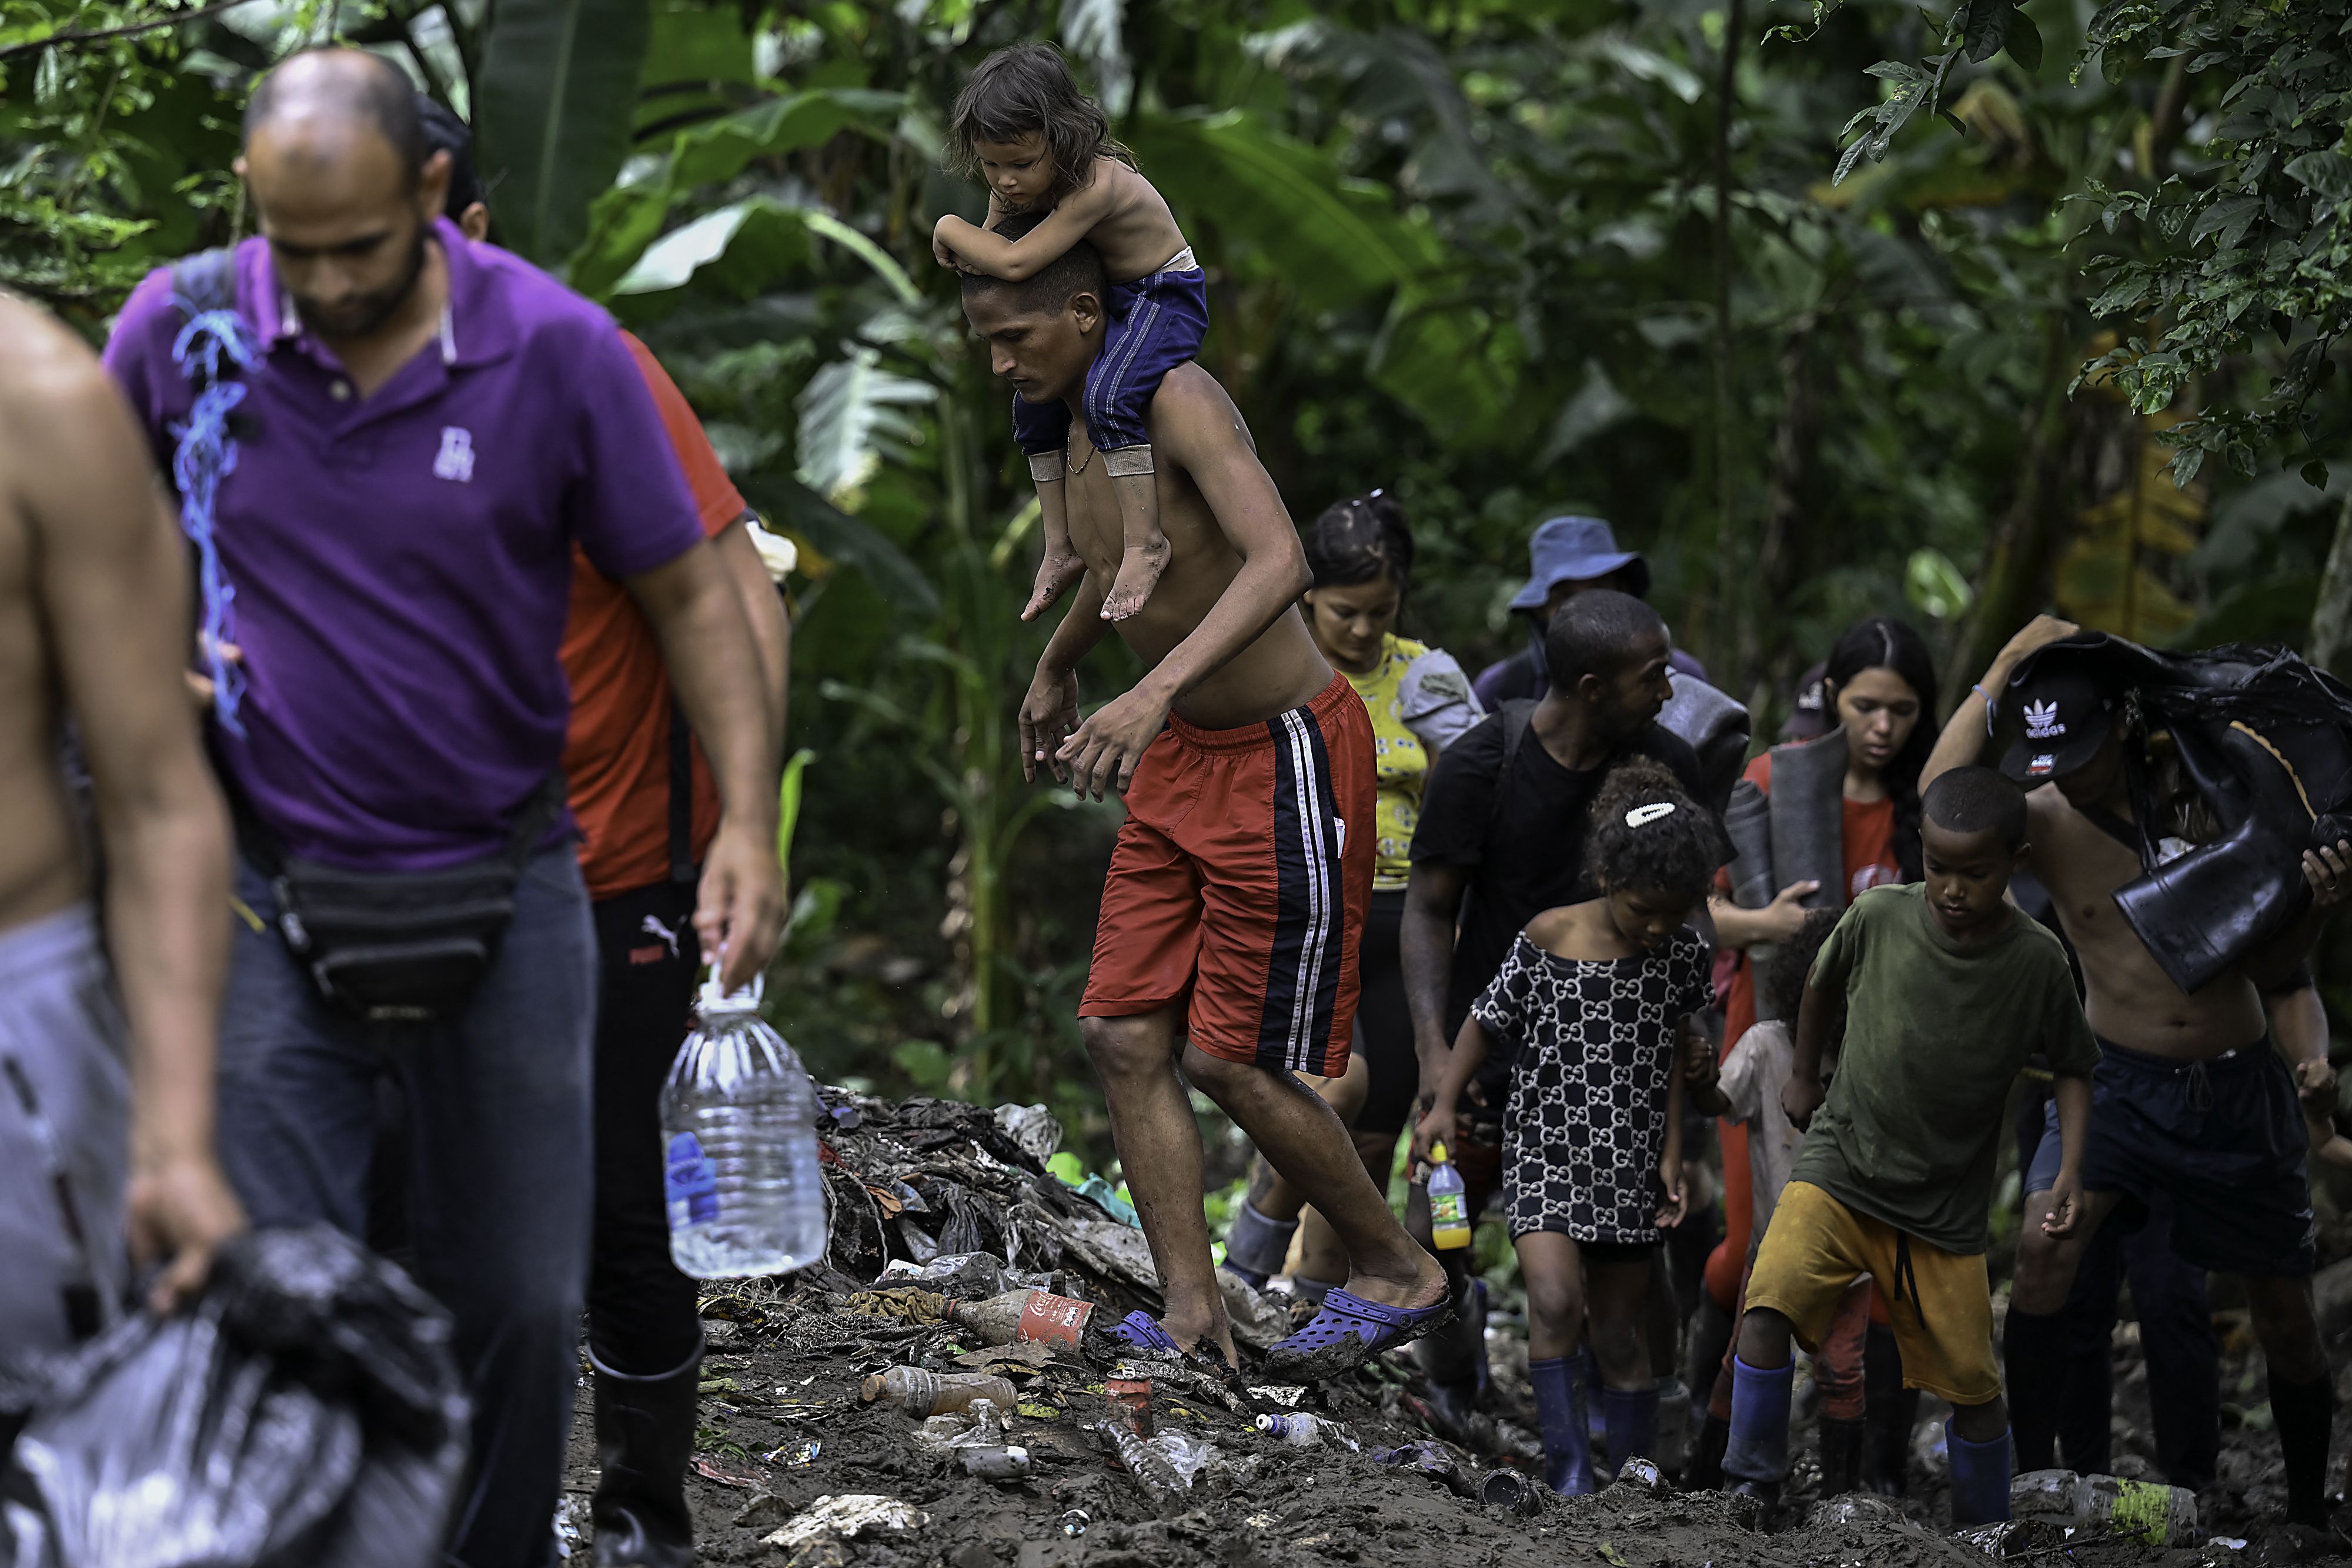 La selva de Darién es una de las zonas más peligrosas que los migrantes deben cruzar para llegar a Panamá. Investigadores prevén que con la época seca el flujo migratorio vuelva a crecer. (Foto: Luis ACOSTA / AFP) 